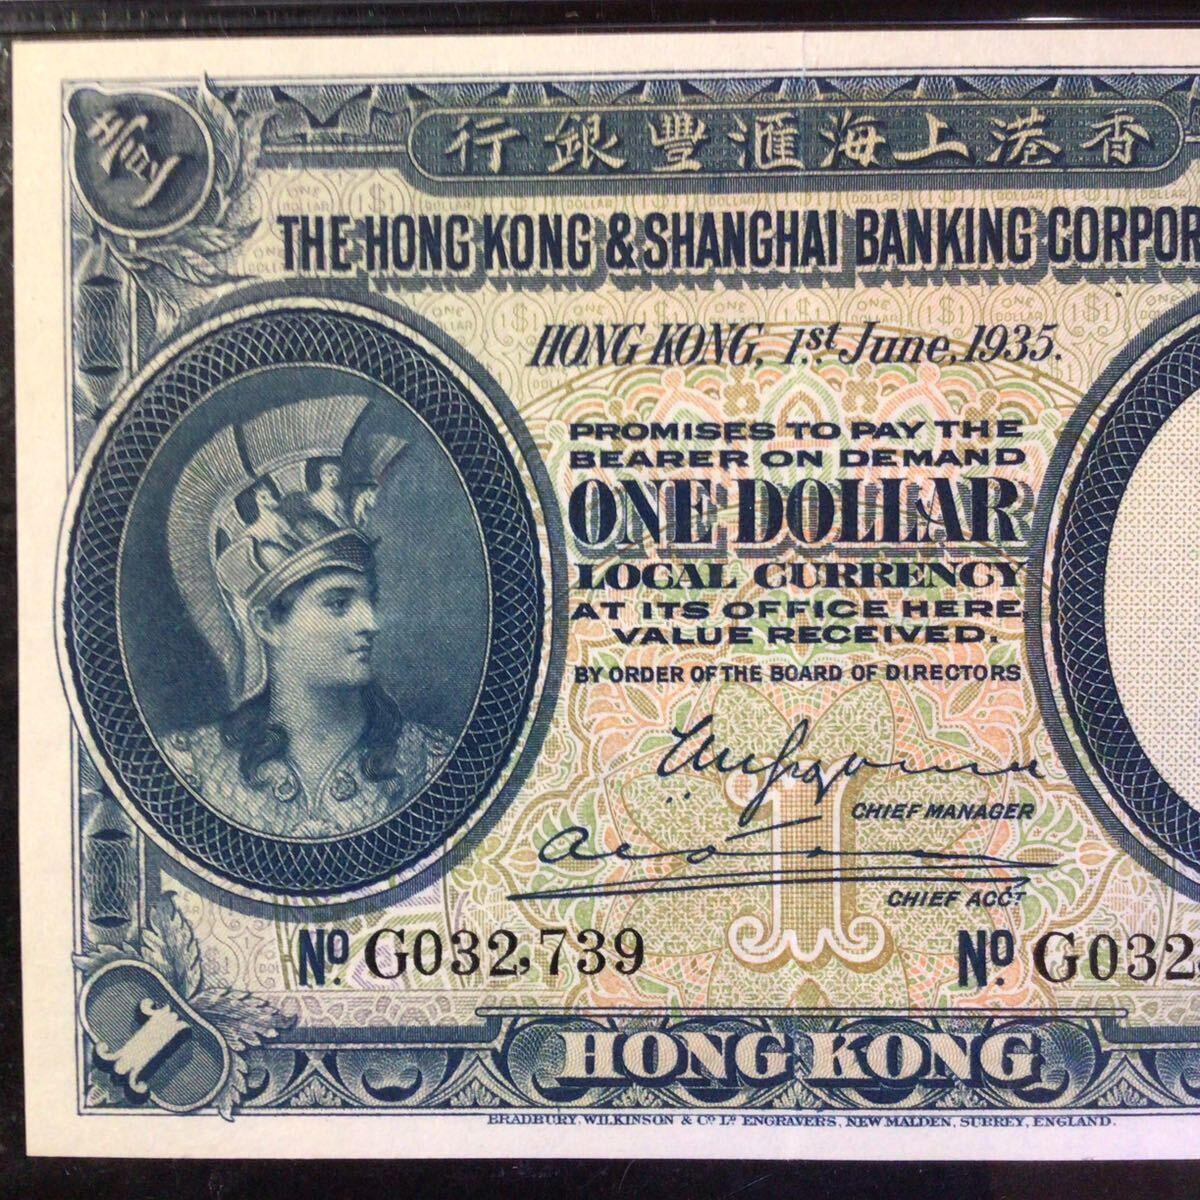 World Banknote Grading HONG KONG《Hong Kong & Shanghai Banking Corp》1 Dollar【1935】『PMG Grading Choice About Uncirculated 50』_画像4